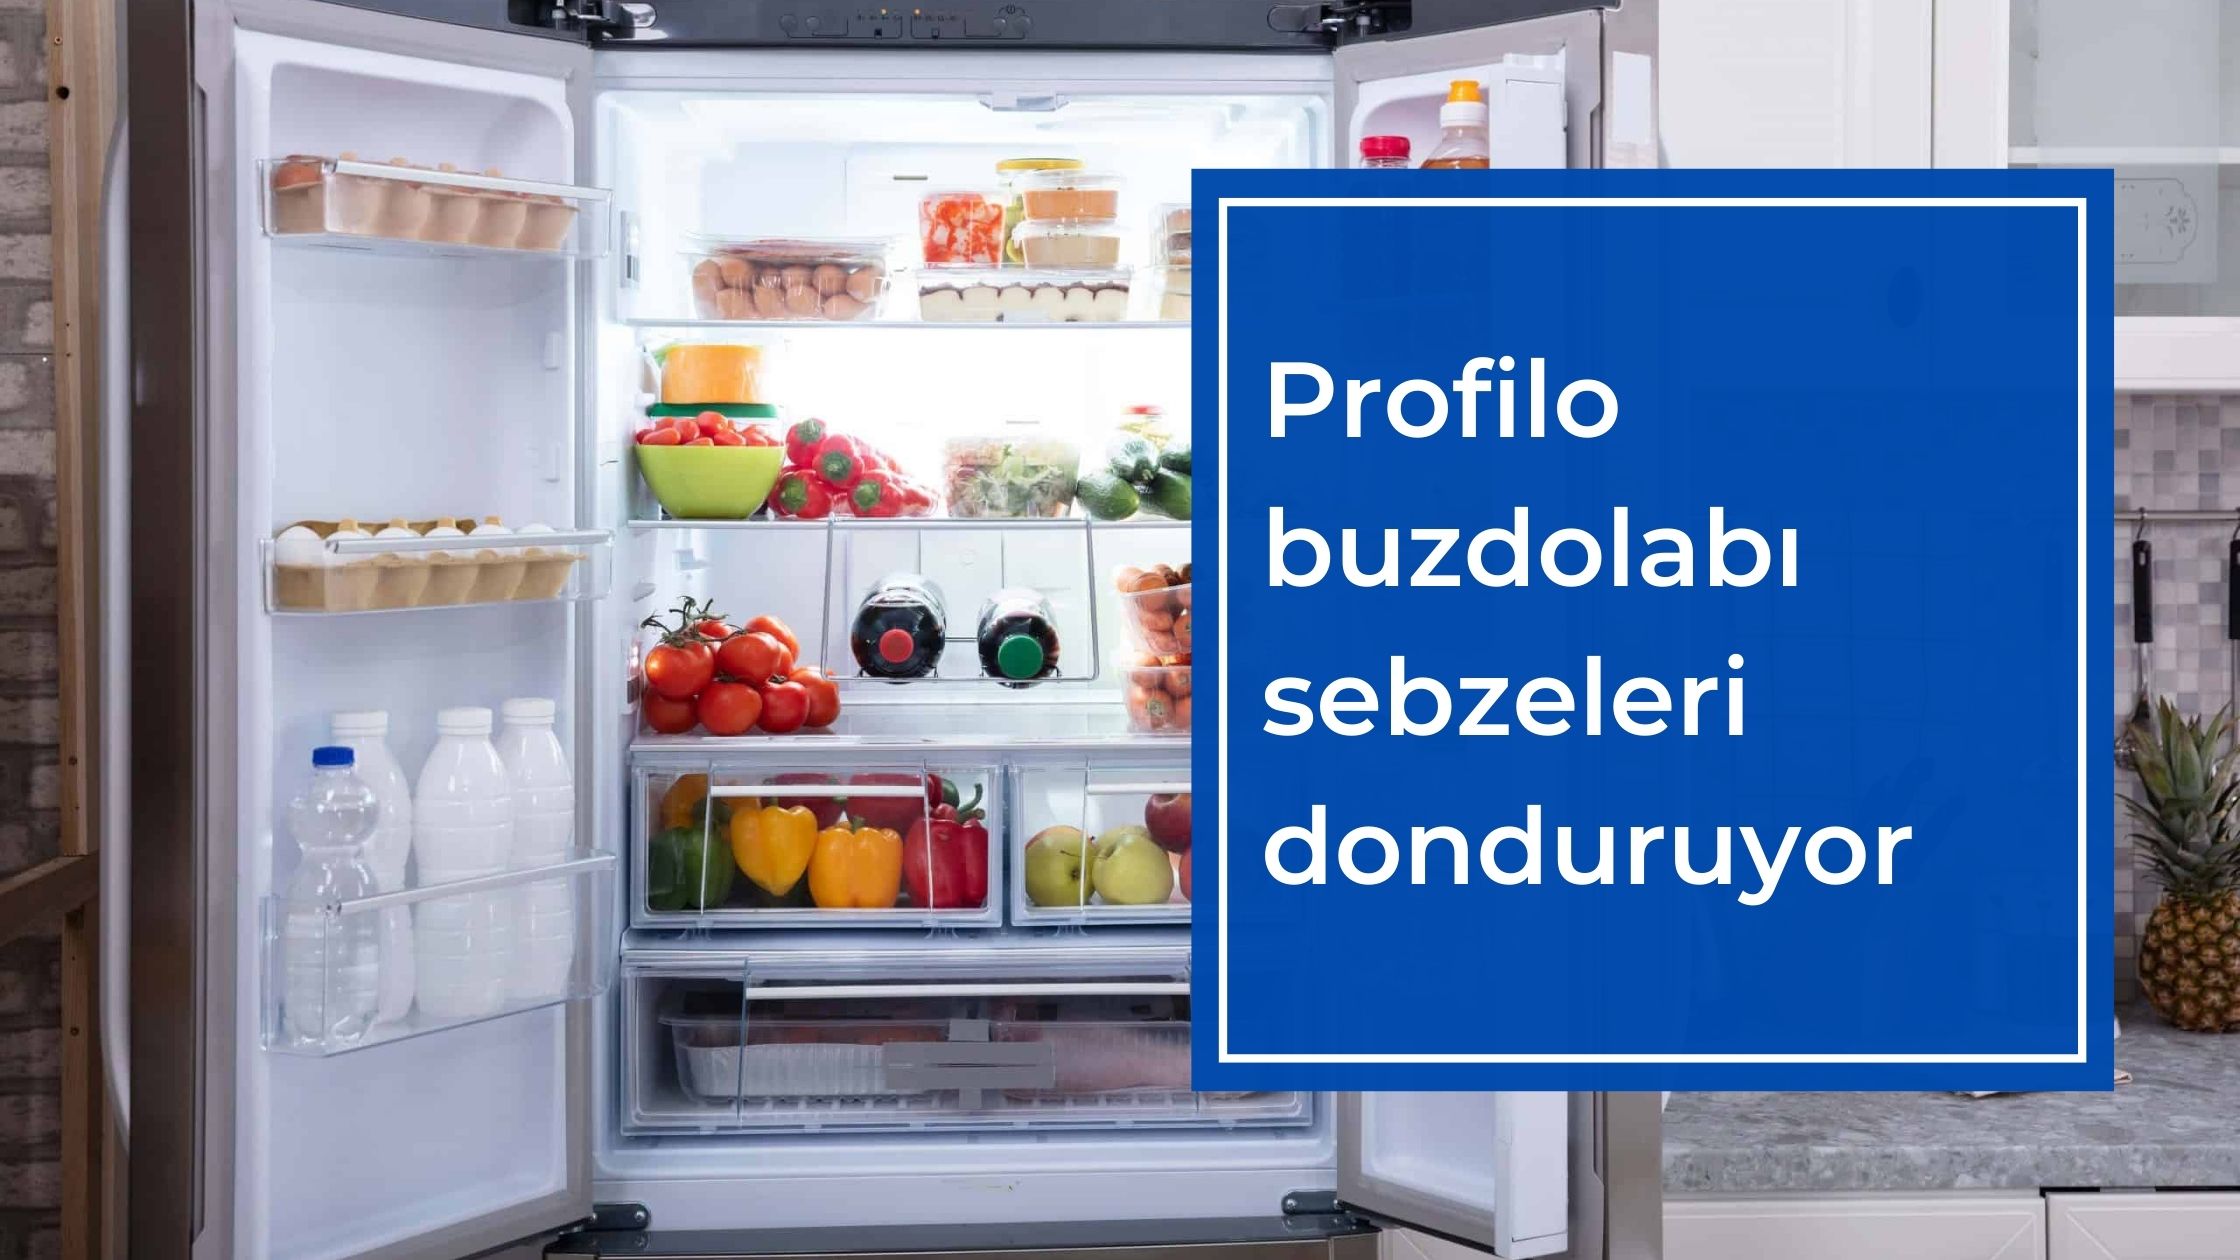 Profilo Buzdolabı Sebzeleri Donduruyor